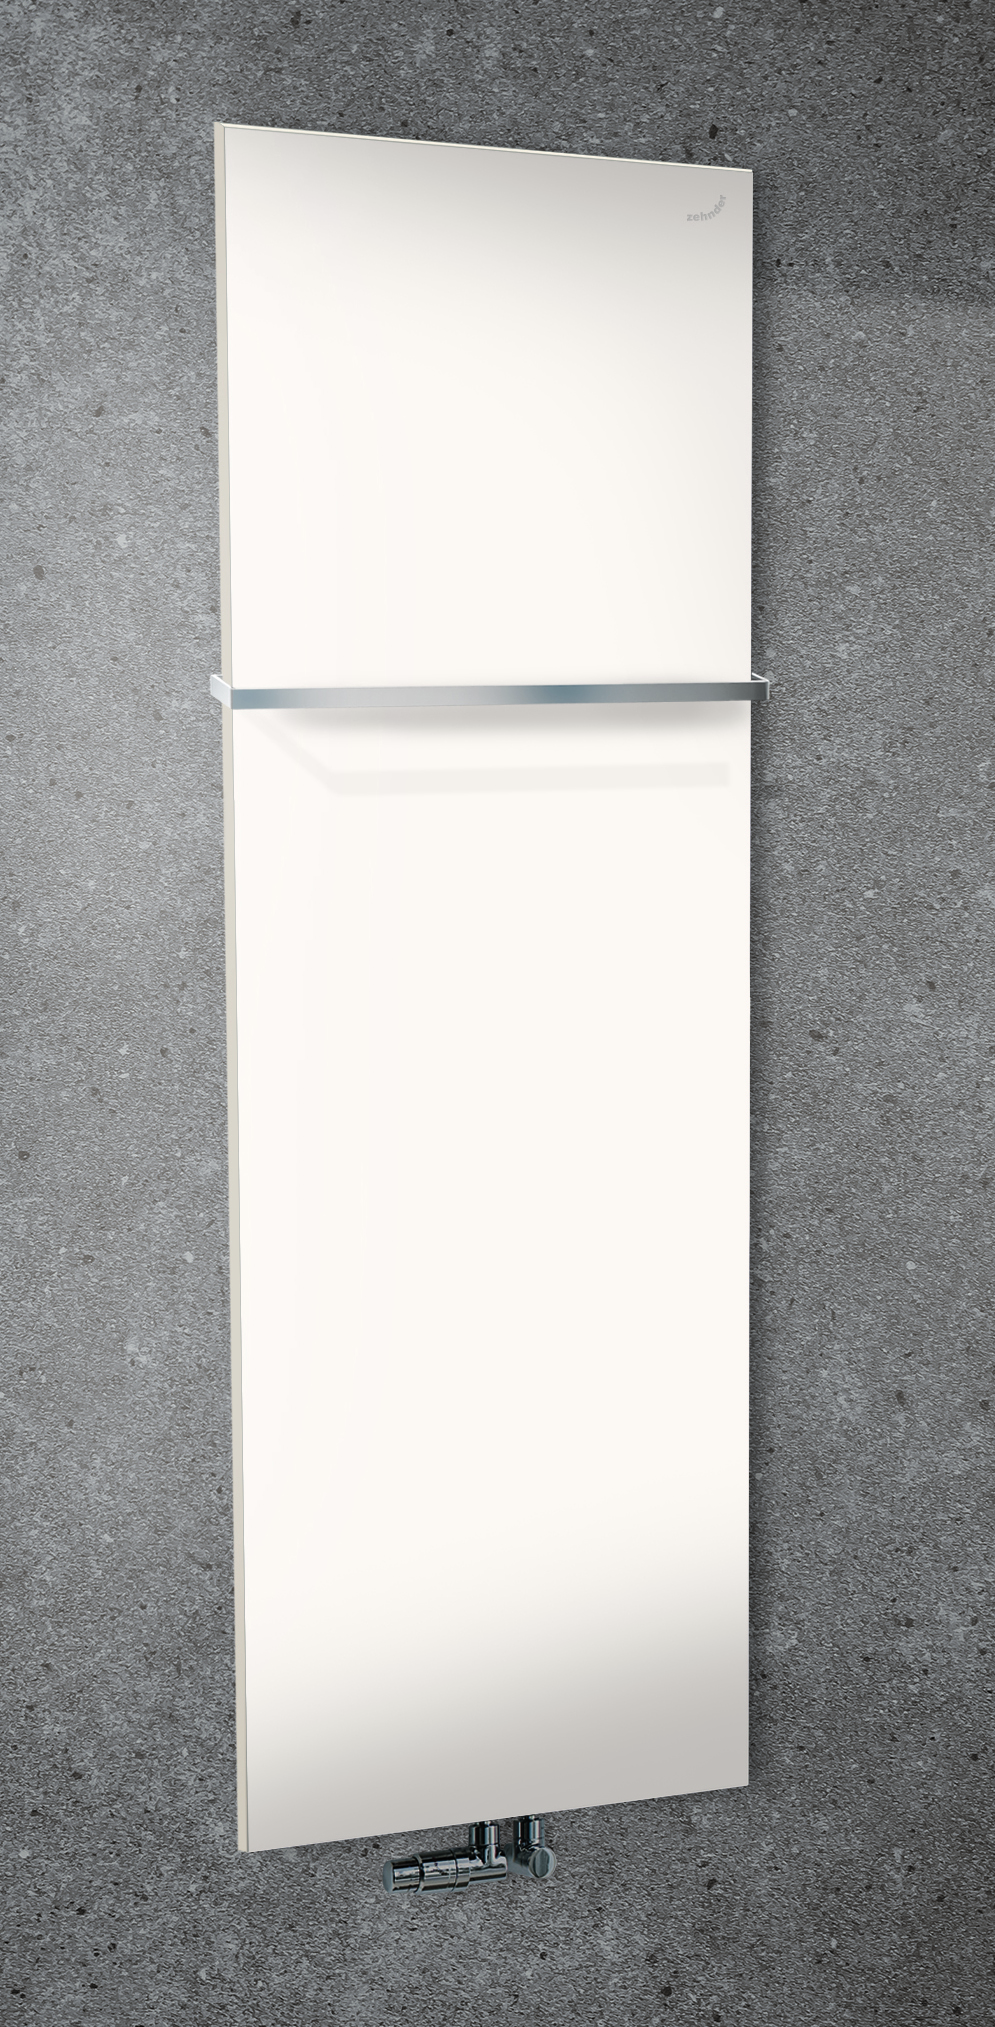 Zehnder Design-Heizkörper „Fina Lean Bar“ für Warmwasser-Zentralheizung mit 50 mm-Mittelanschluss 50 × 130 cm in Verkehrsweiß (RAL 9016, glänzend)